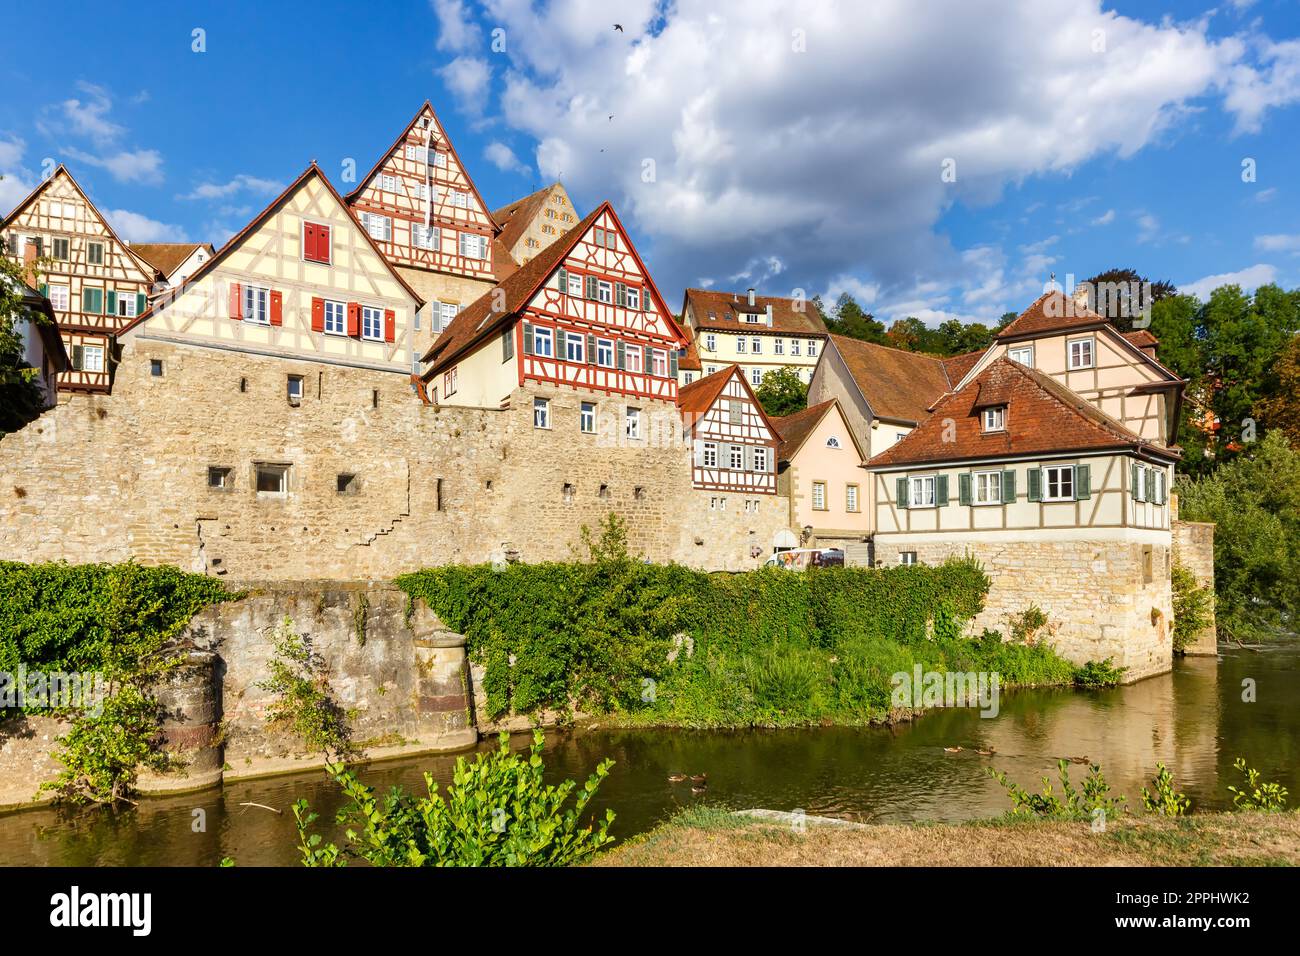 SchwÃ¤bisch Hall maisons à colombages de la ville du Moyen âge au bord de la rivière Kocher en Allemagne Banque D'Images